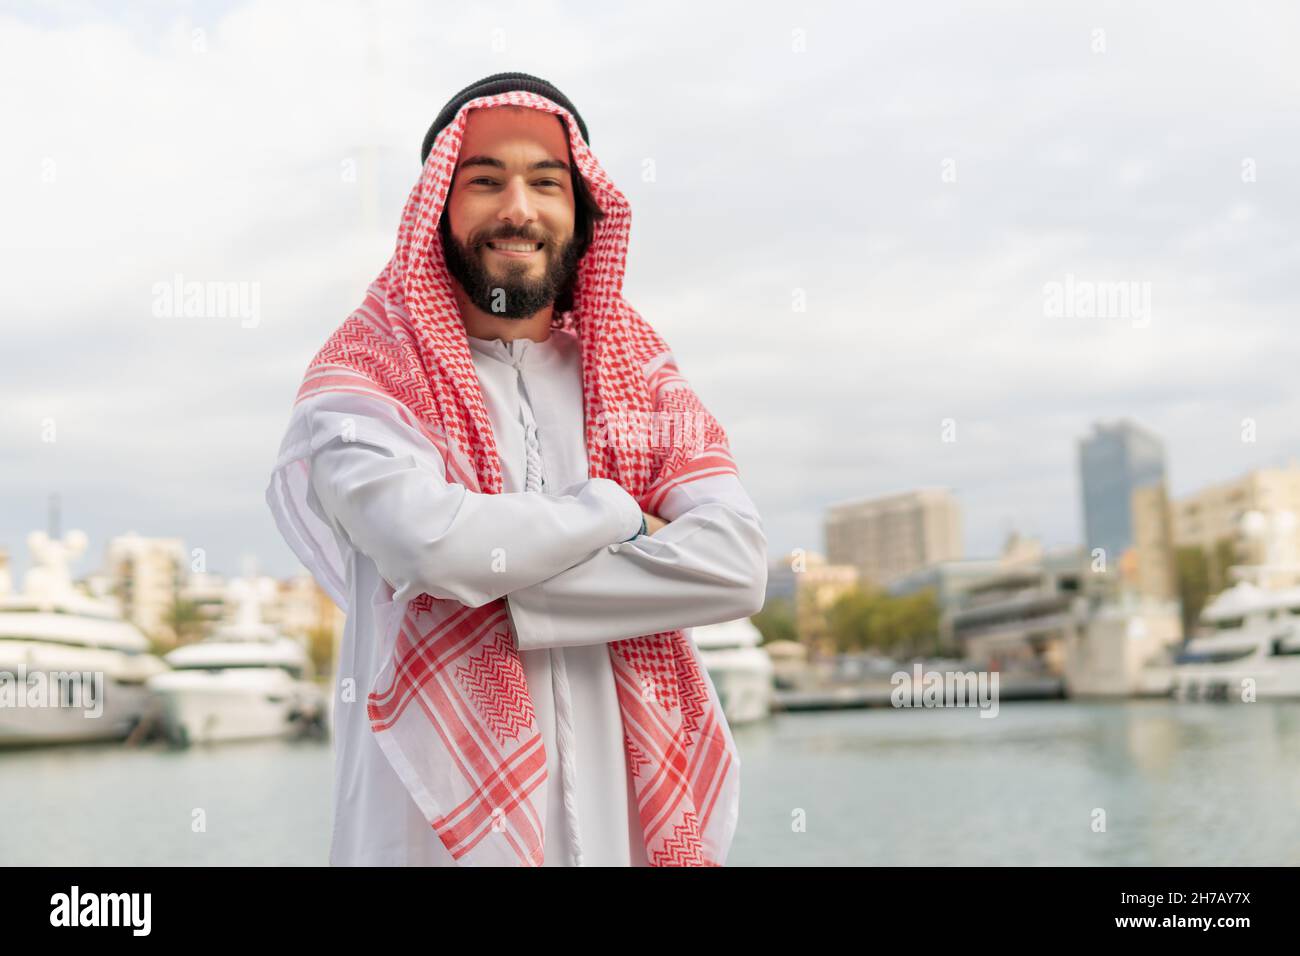 Porträt eines fröhlichen, fröhlichen arabischen Mannes in traditioneller Kleidung, keffiyeh und weißer Thobe, der die Kamera anlächelt, während er im Hafen steht und die Arme gekreuzt hält. Foto des erfolgreichen saudischen Geschäftsmannes Stockfoto